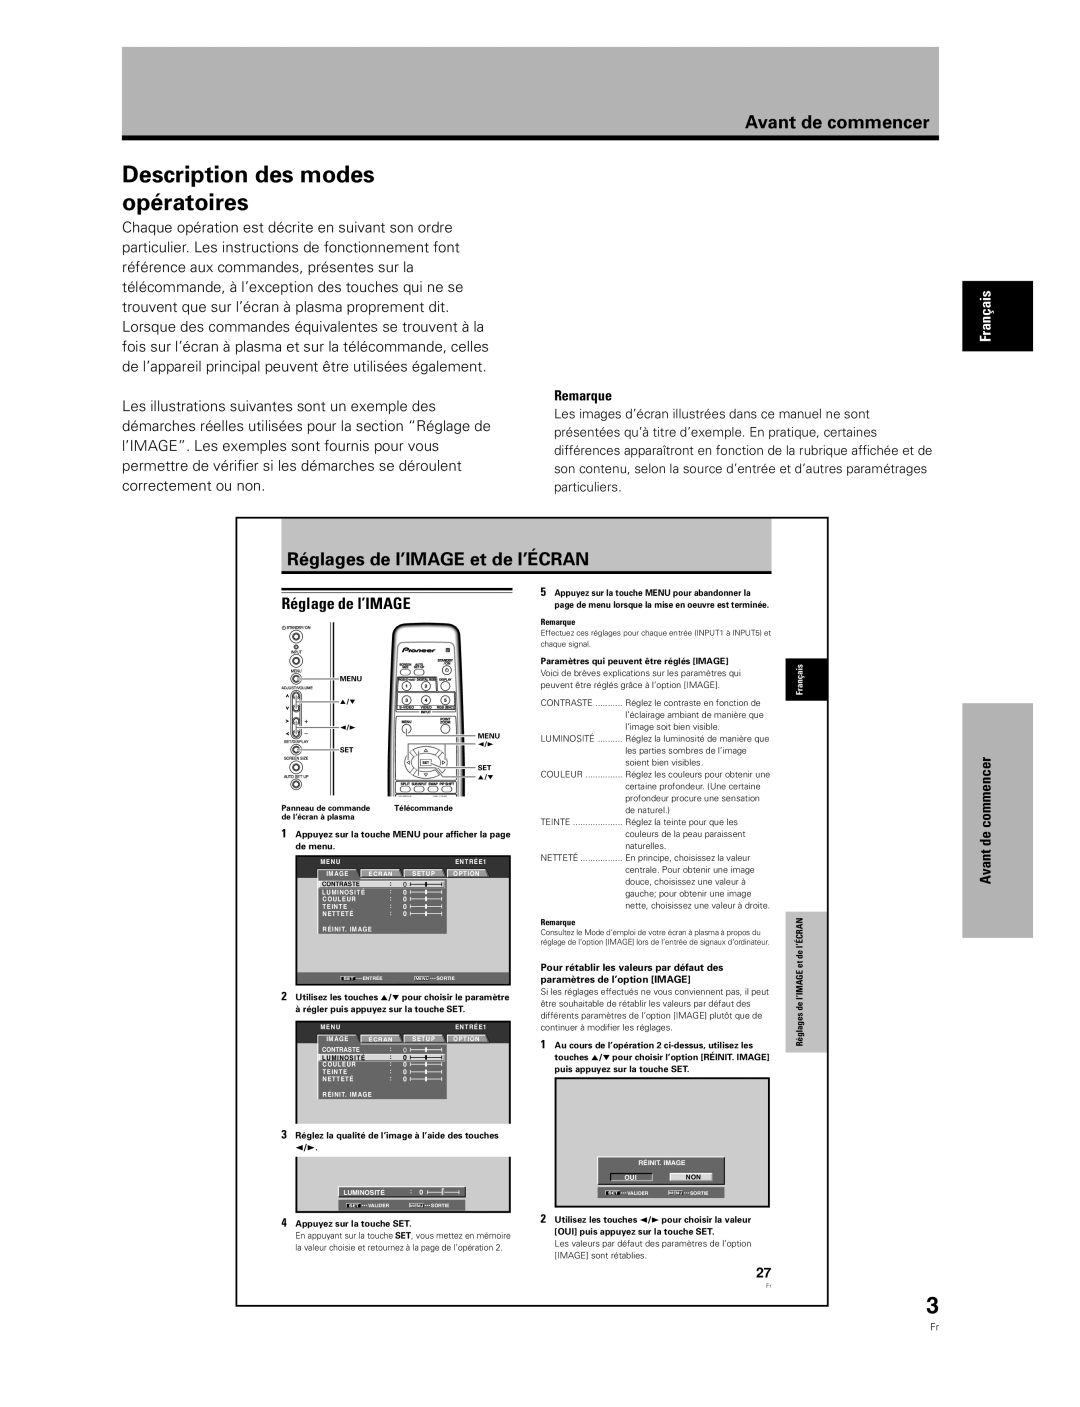 Pioneer PDA-5003 manual Description des modes opératoires, Réglages de l’IMAGE et de l’ÉCRAN, Réglage de l’IMAGE, Remarque 